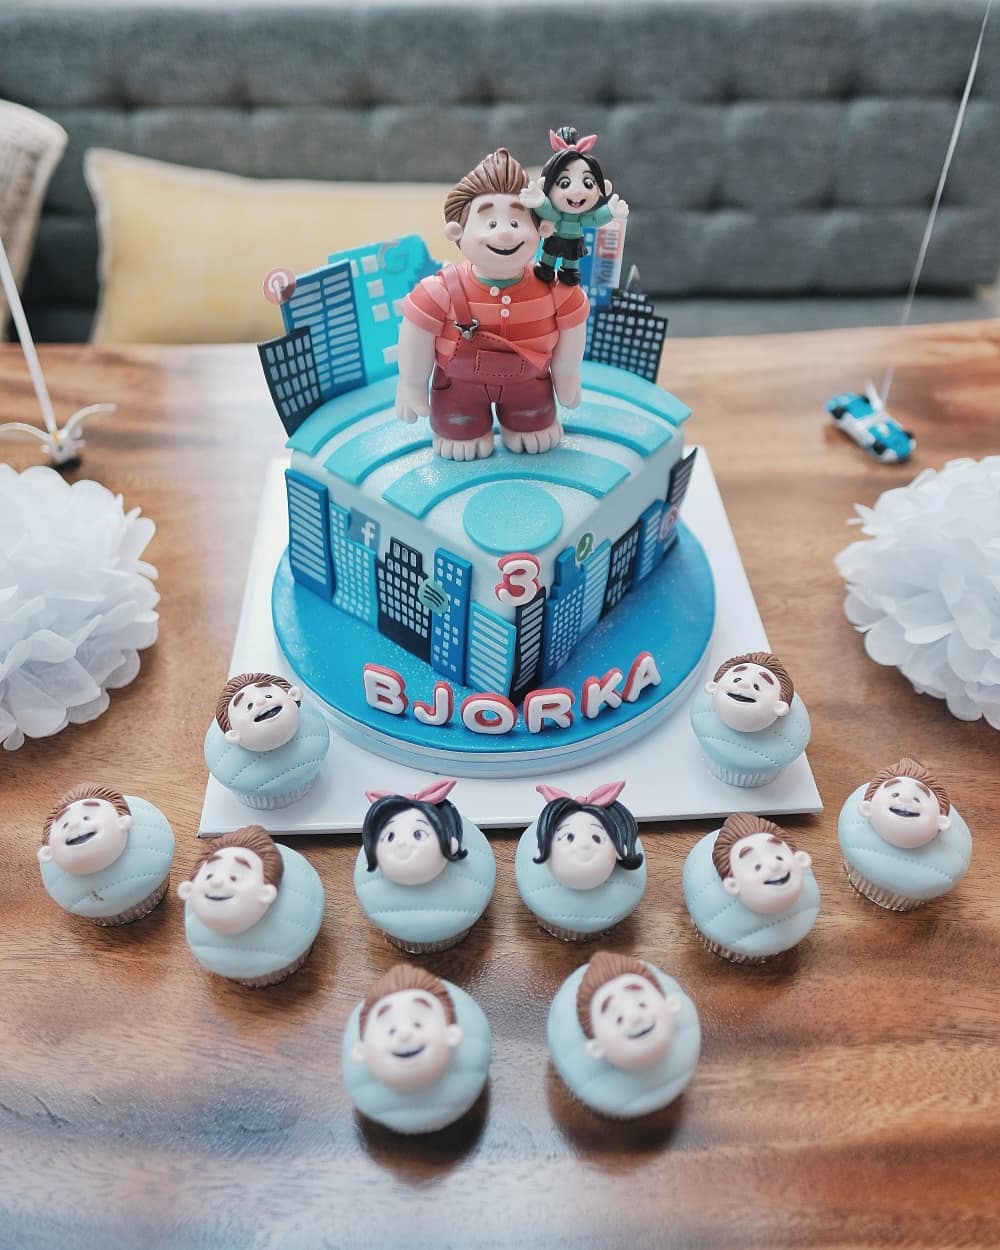 7 Momen manis perayaan ulang tahun Bjorka, bentuk kuenya unik